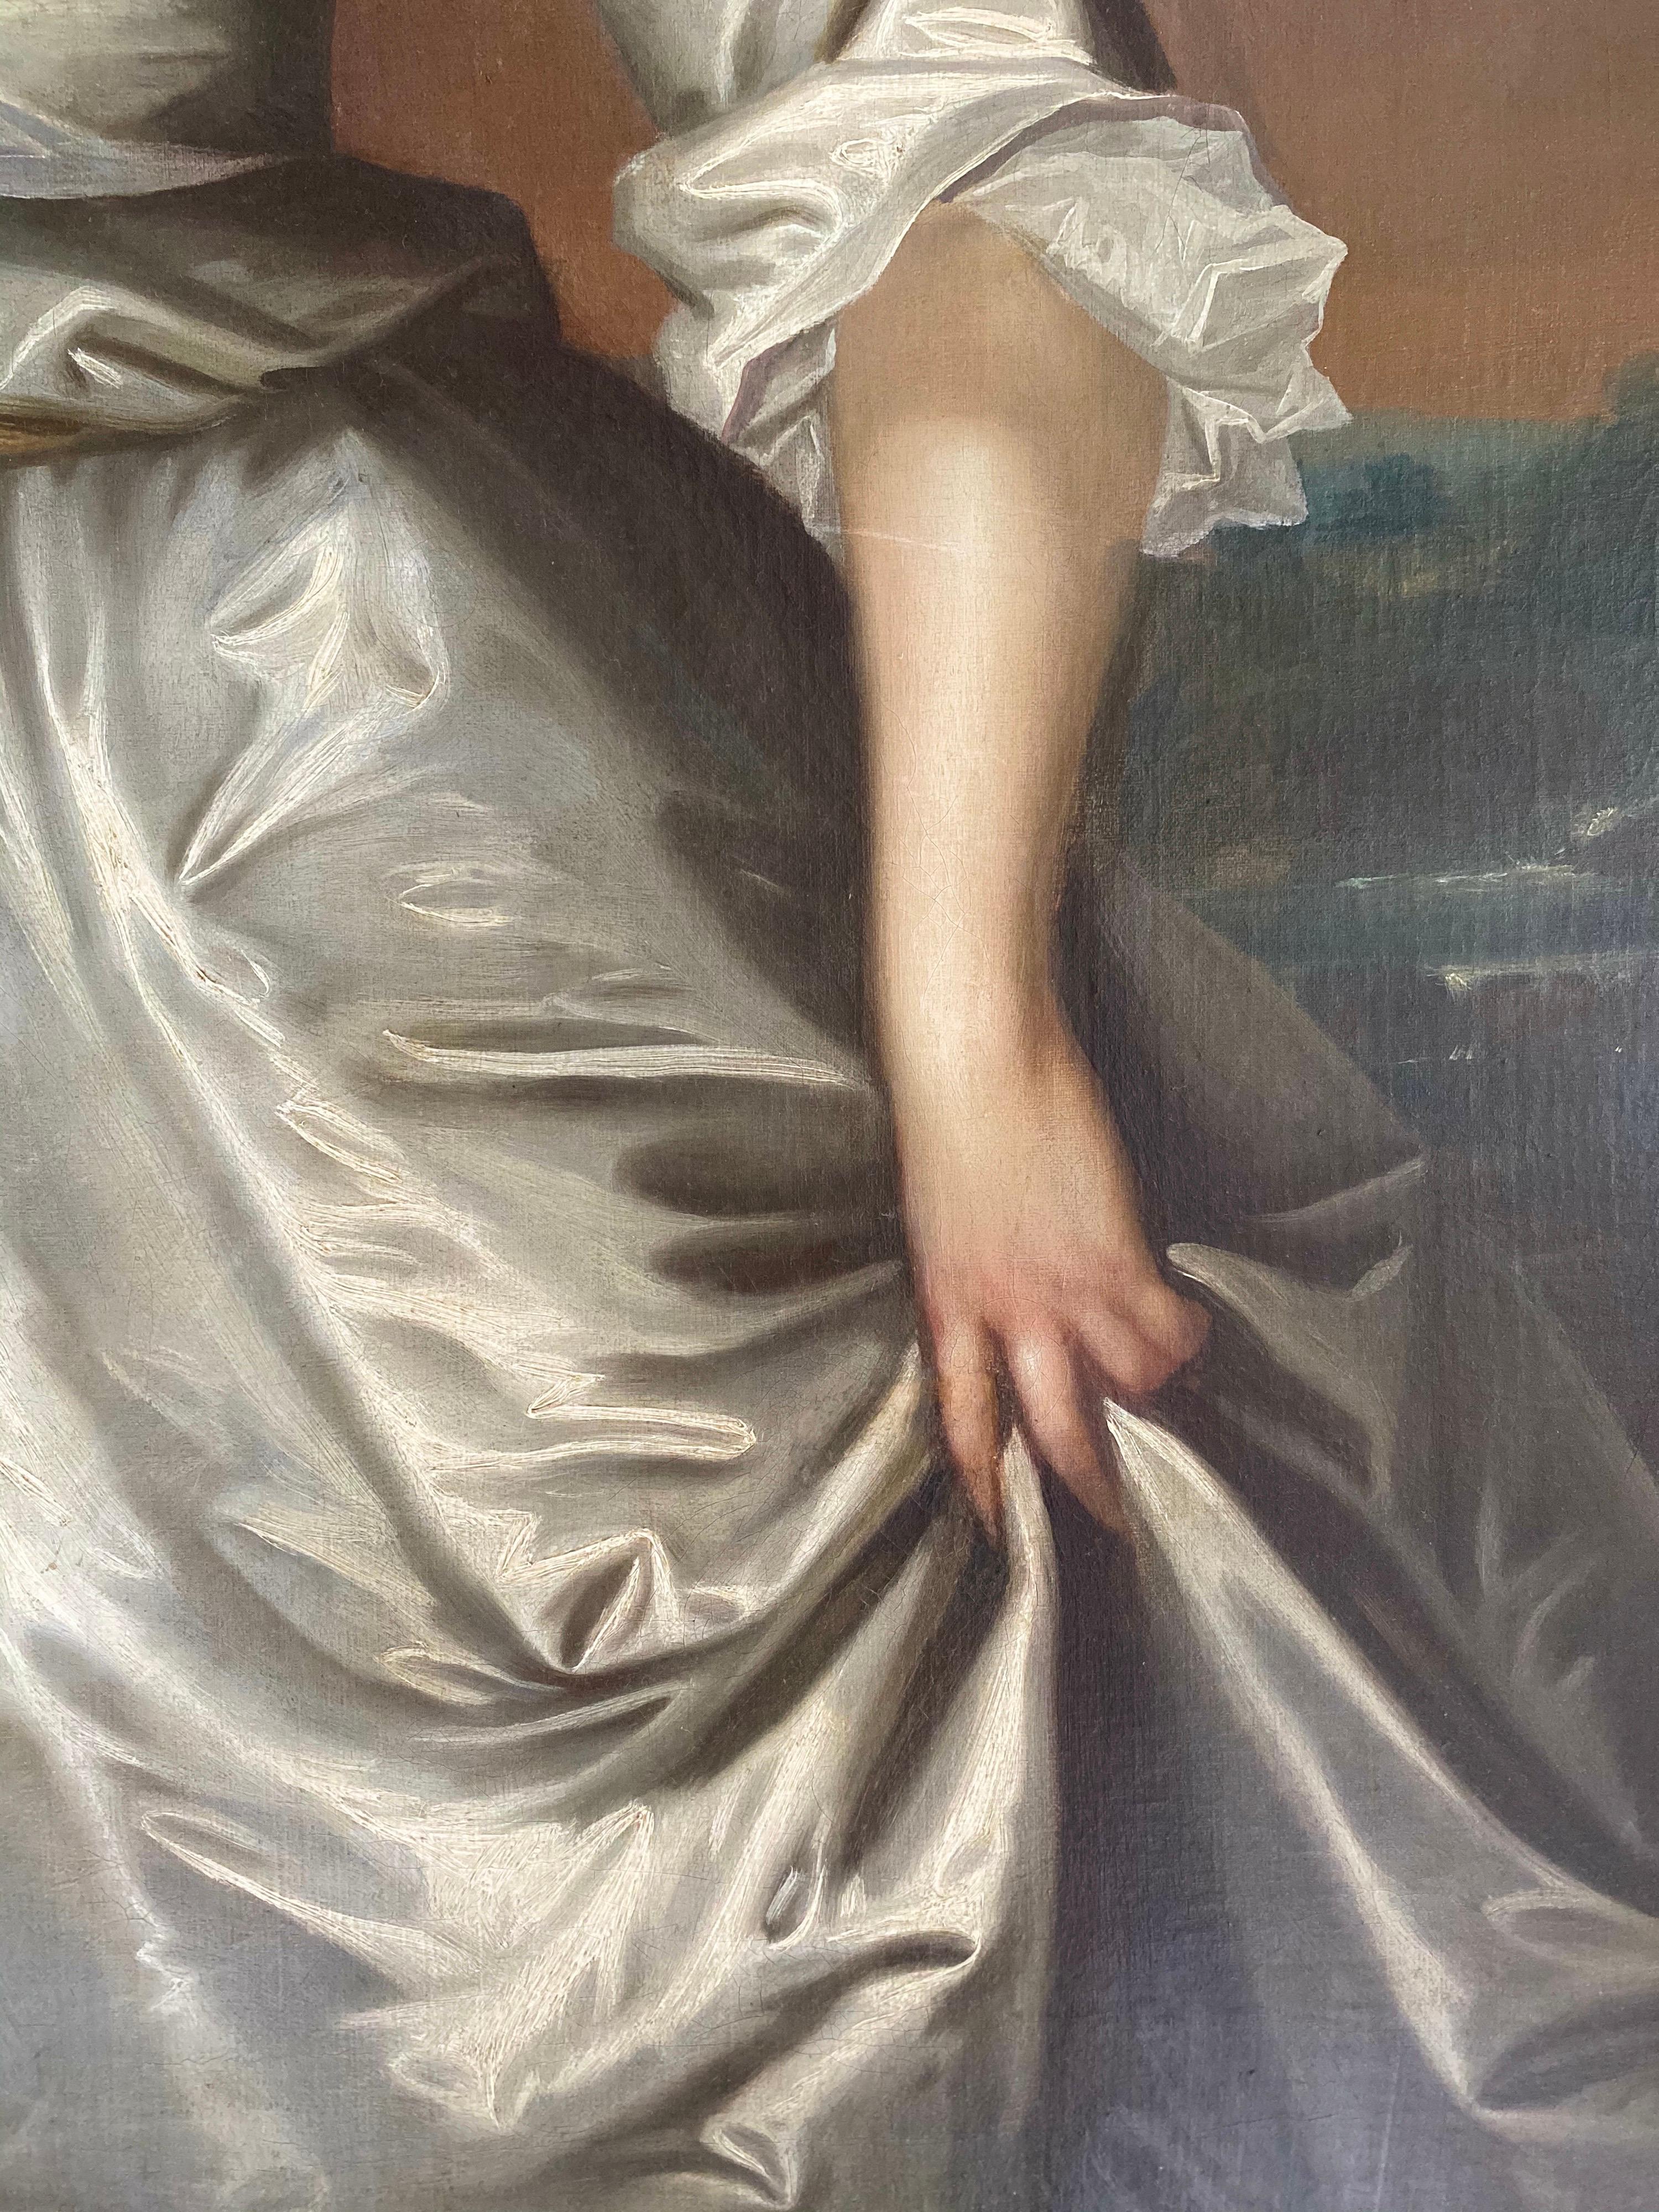 Englisches Porträt von Henrietta Pelham-Holles, Herzogin von Newcastle, aus dem 18. Jahrhundert.  (Grau), Portrait Painting, von Charles Jervas